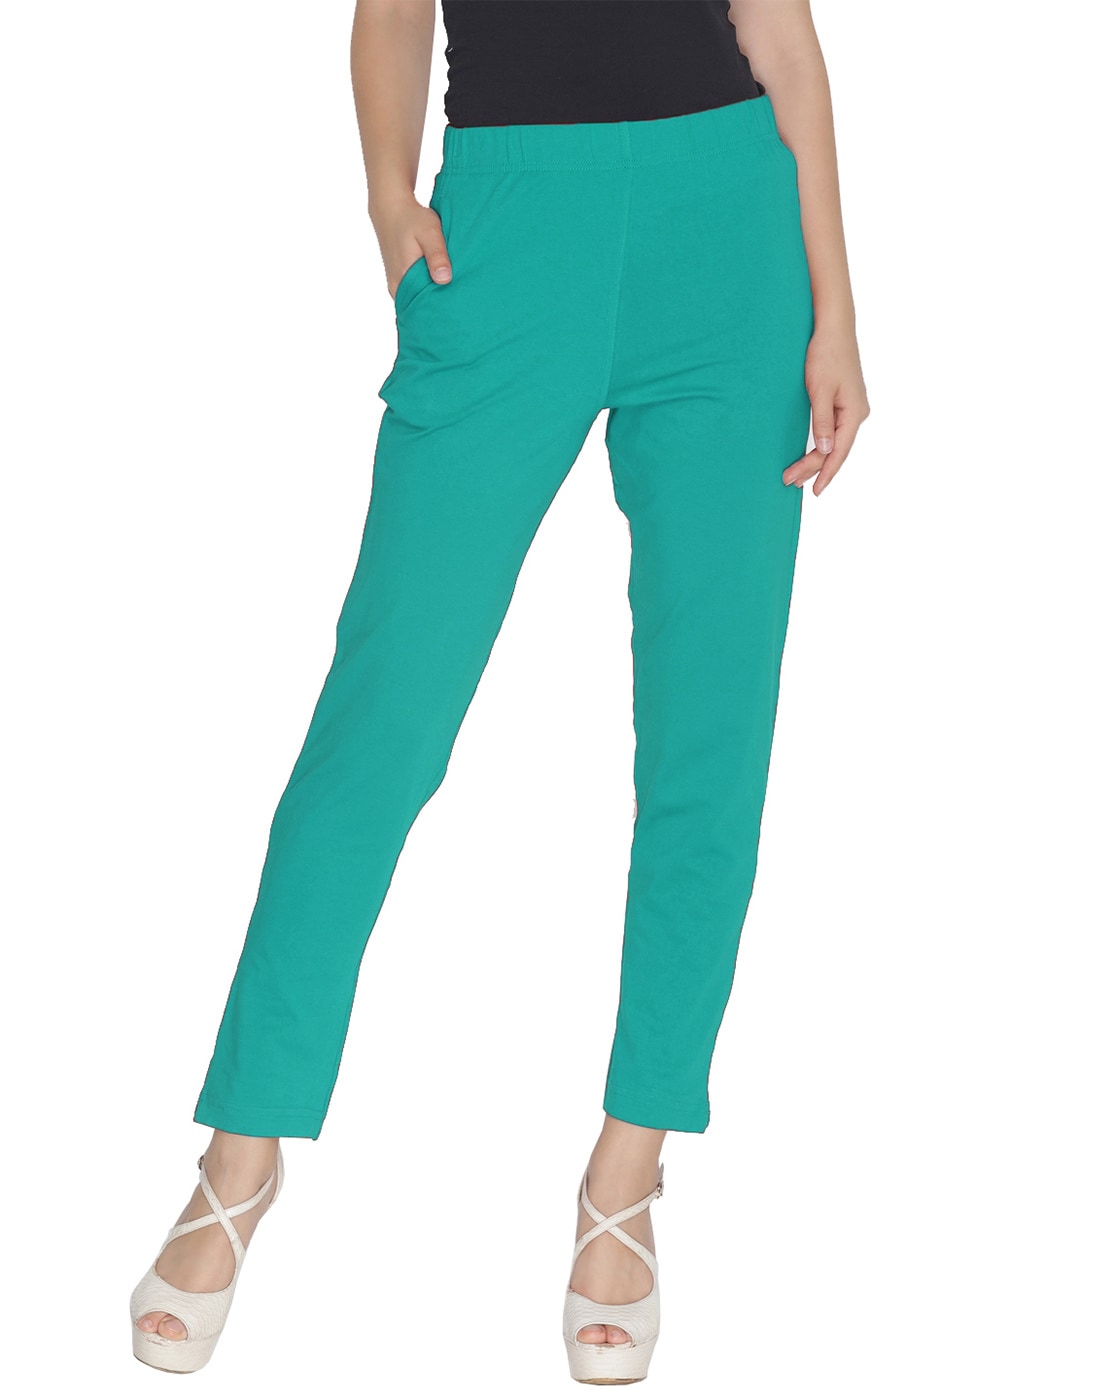 Buy Lyra Black Kurti Pant/Women's Pant (Free Size) at